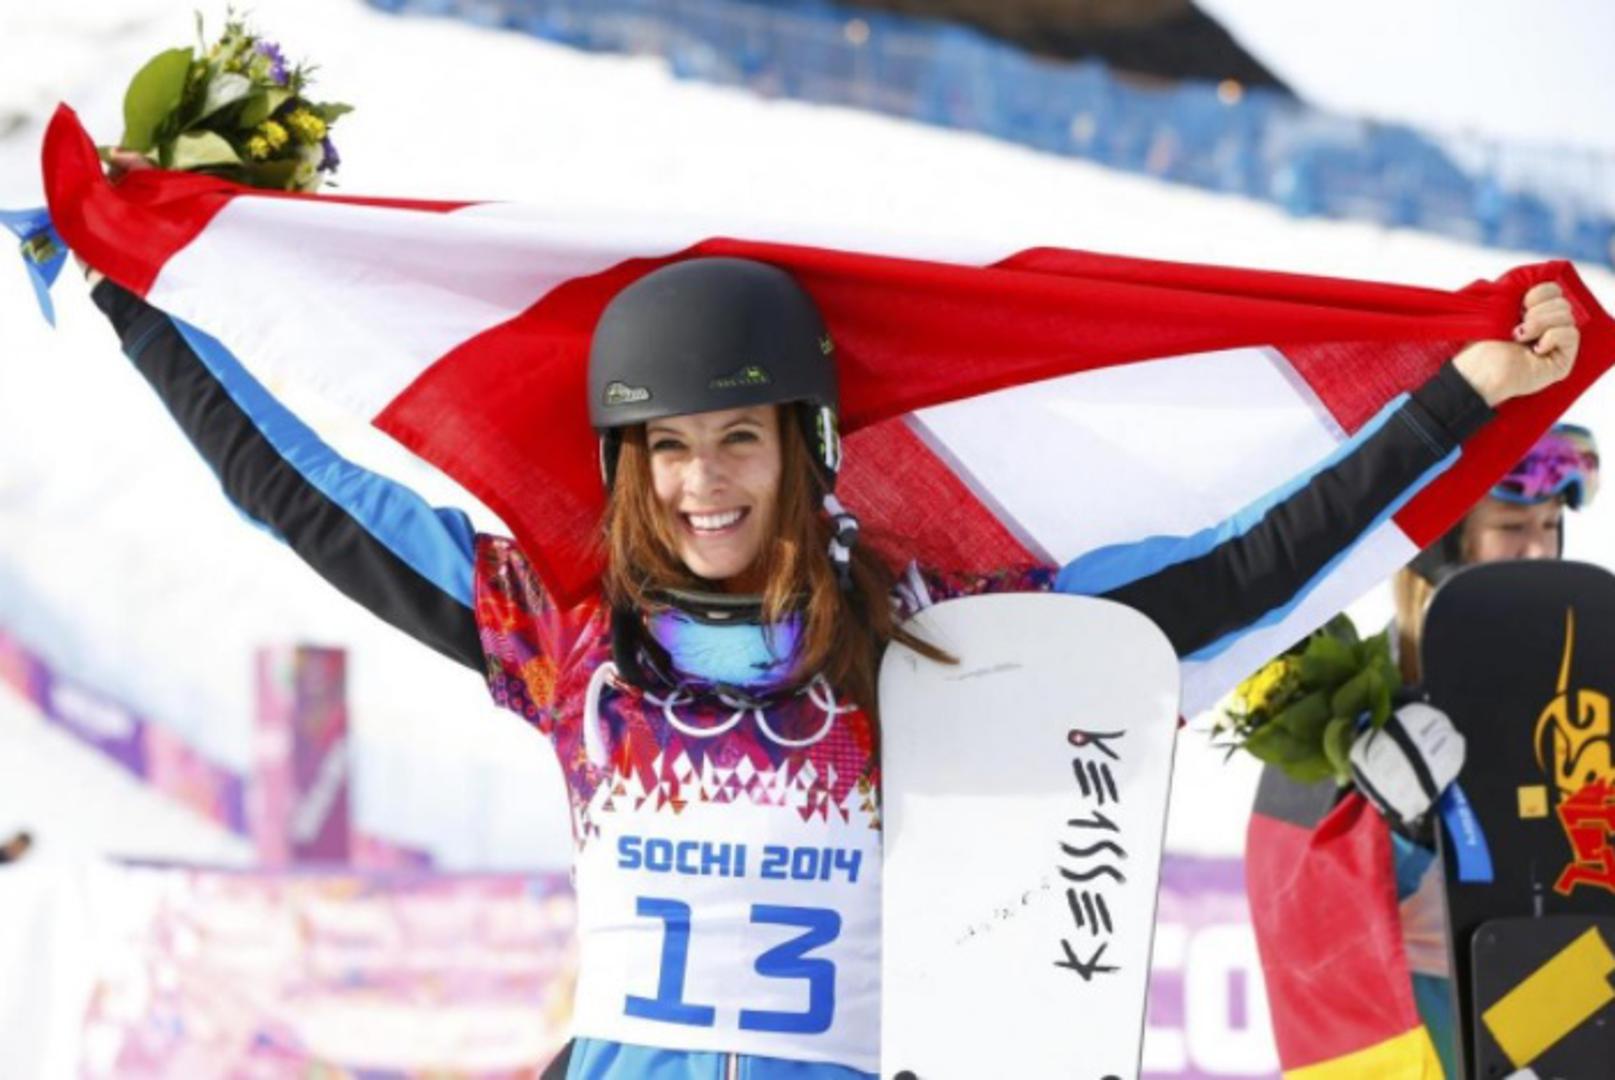 Austrijanka Julia Dujmovits (31) očekuje mnogo na Igrama u Pjongčangu. Prije četiri godine u Sočiju osvojila je zlato u paralelnom slalomu.